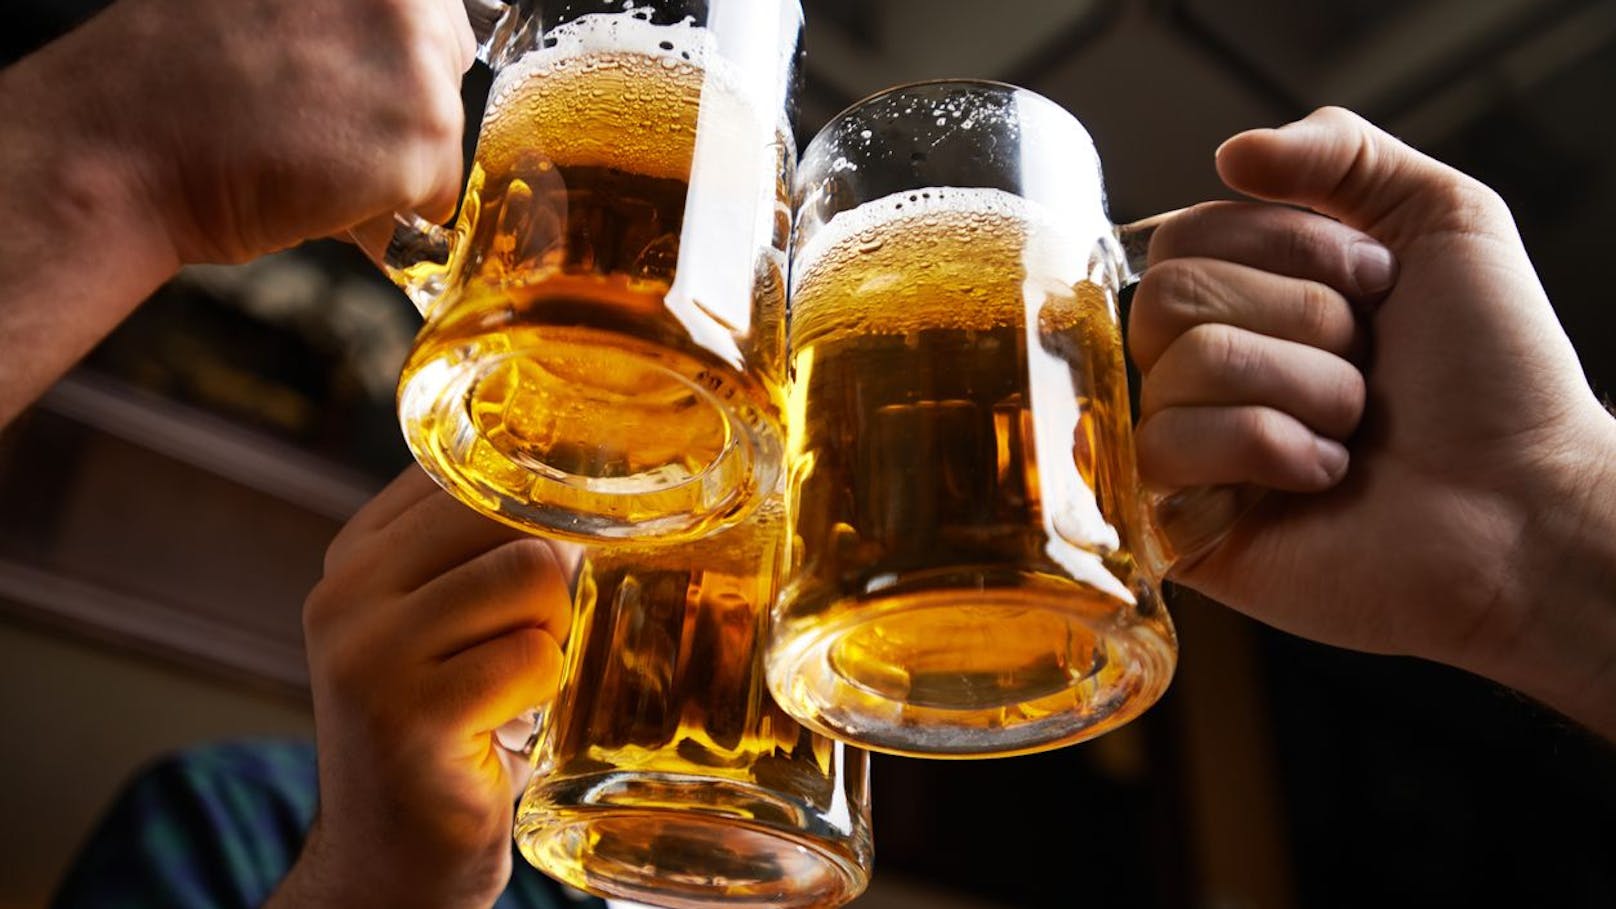 Bei den Getränken lassen wir uns das Bier mit fast 110 Litern pro Kopf und Jahr besonders gerne schmecken